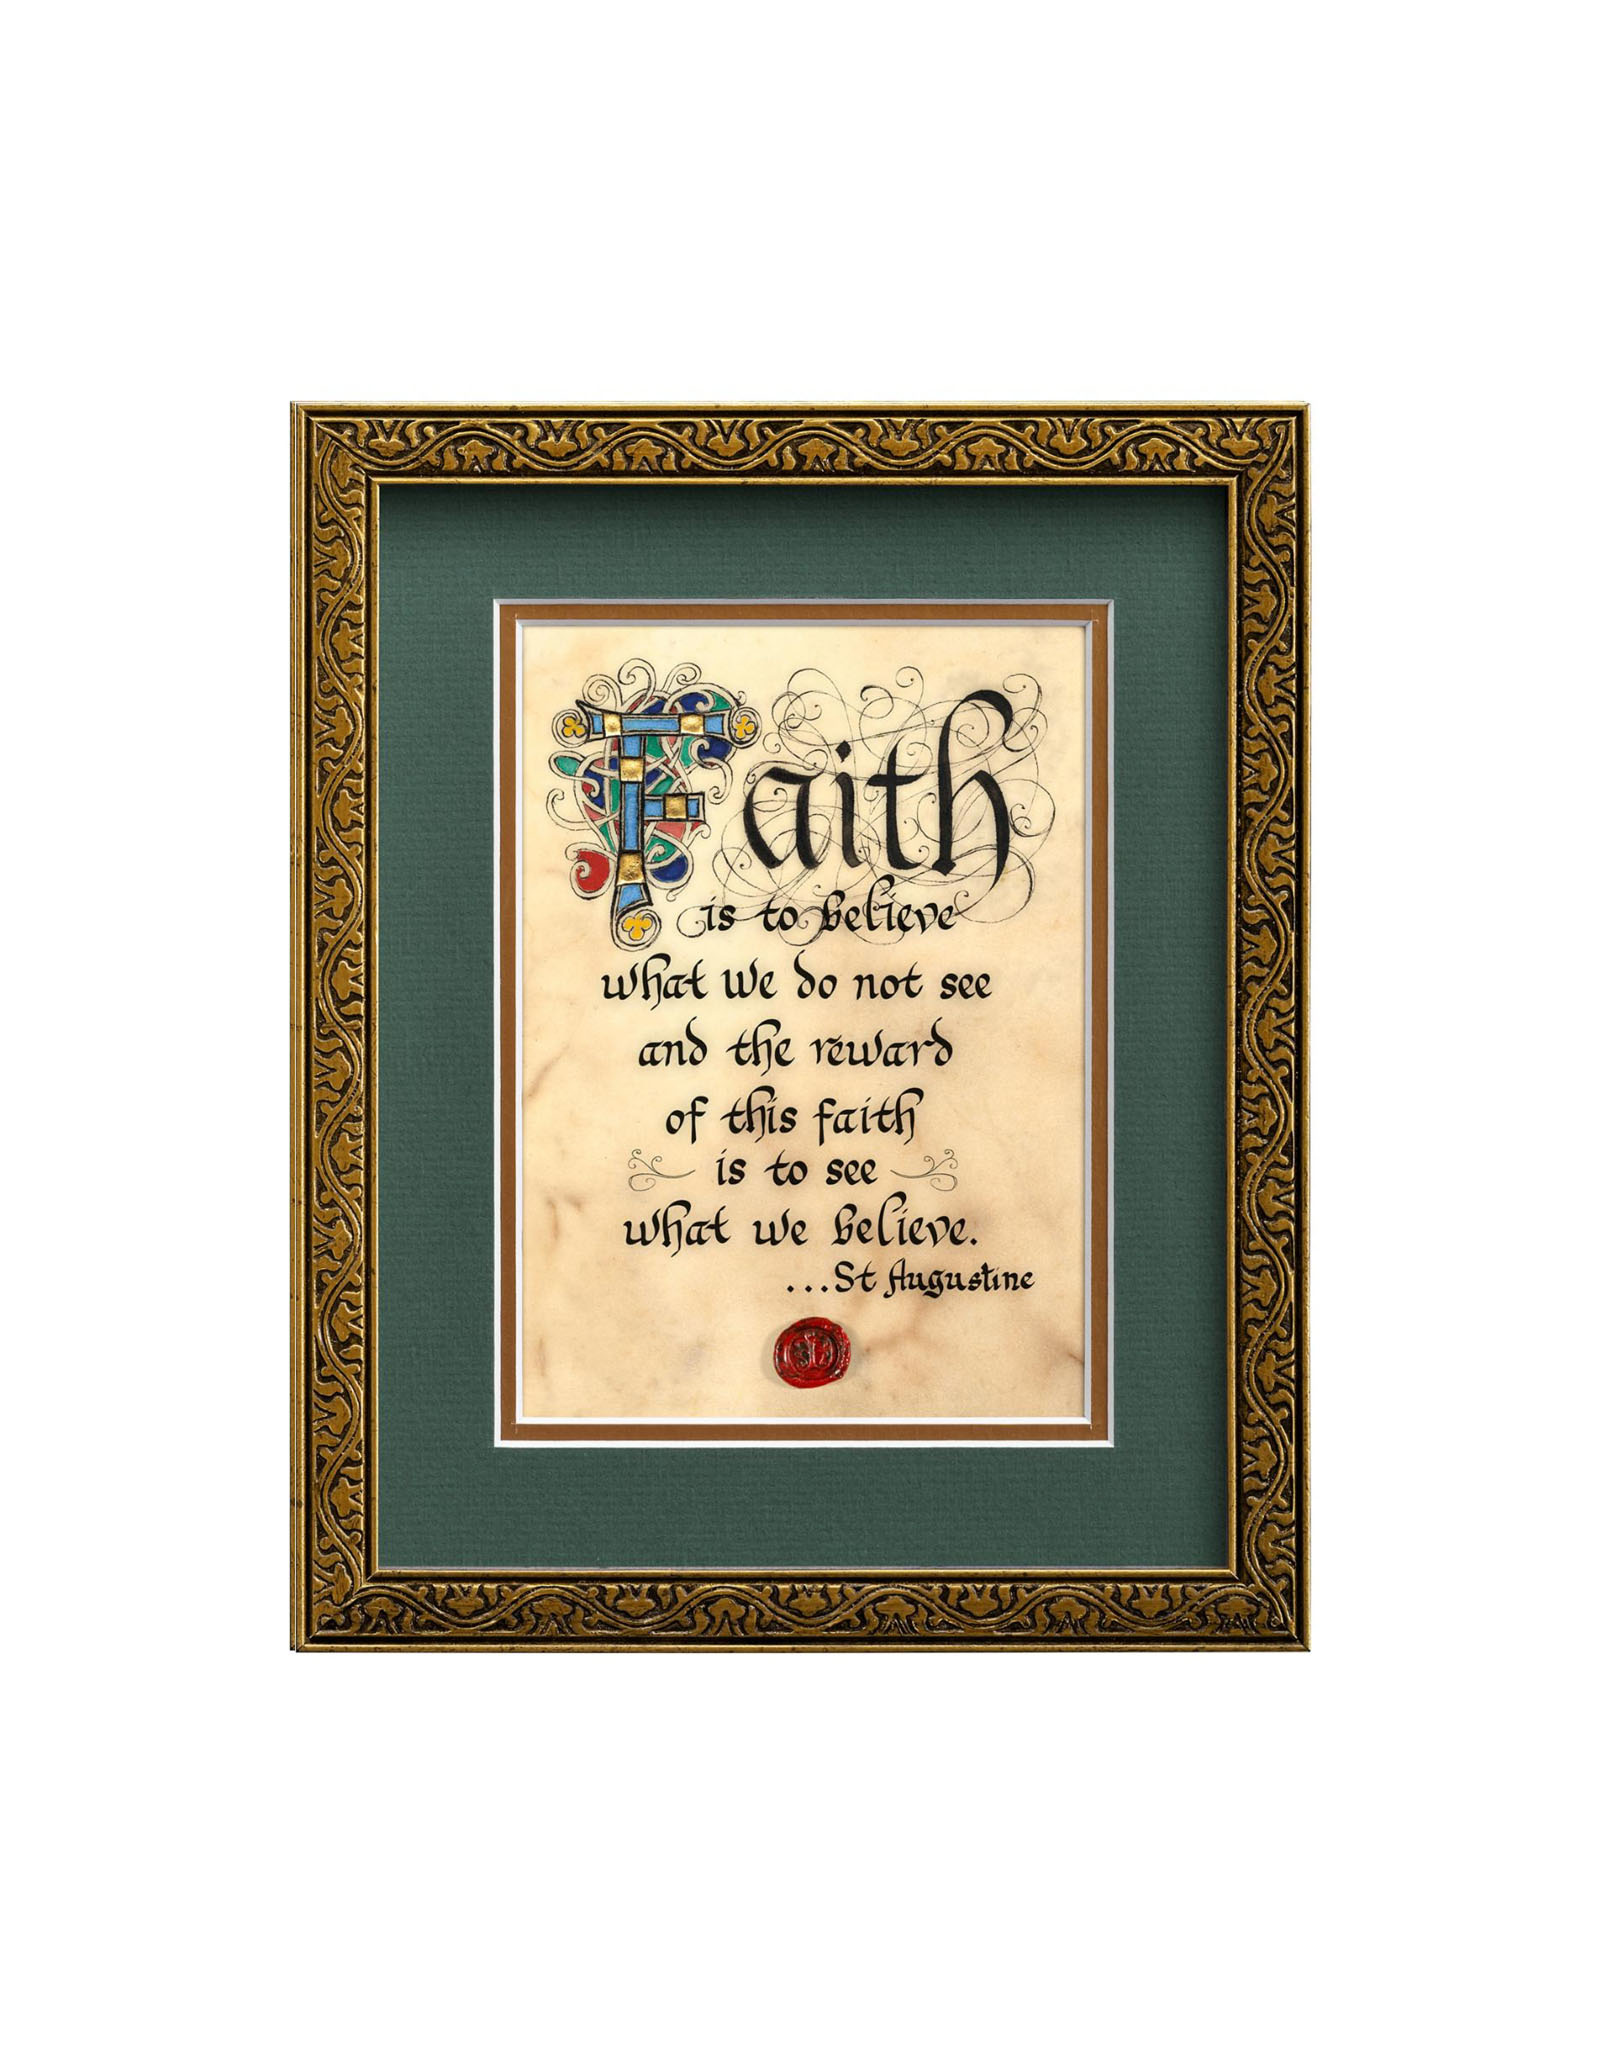 PLAQUES & GIFTS CELTIC MANUSCRIPT 8x10 PLAQUE - "FAITH ST AUGUSTINE"